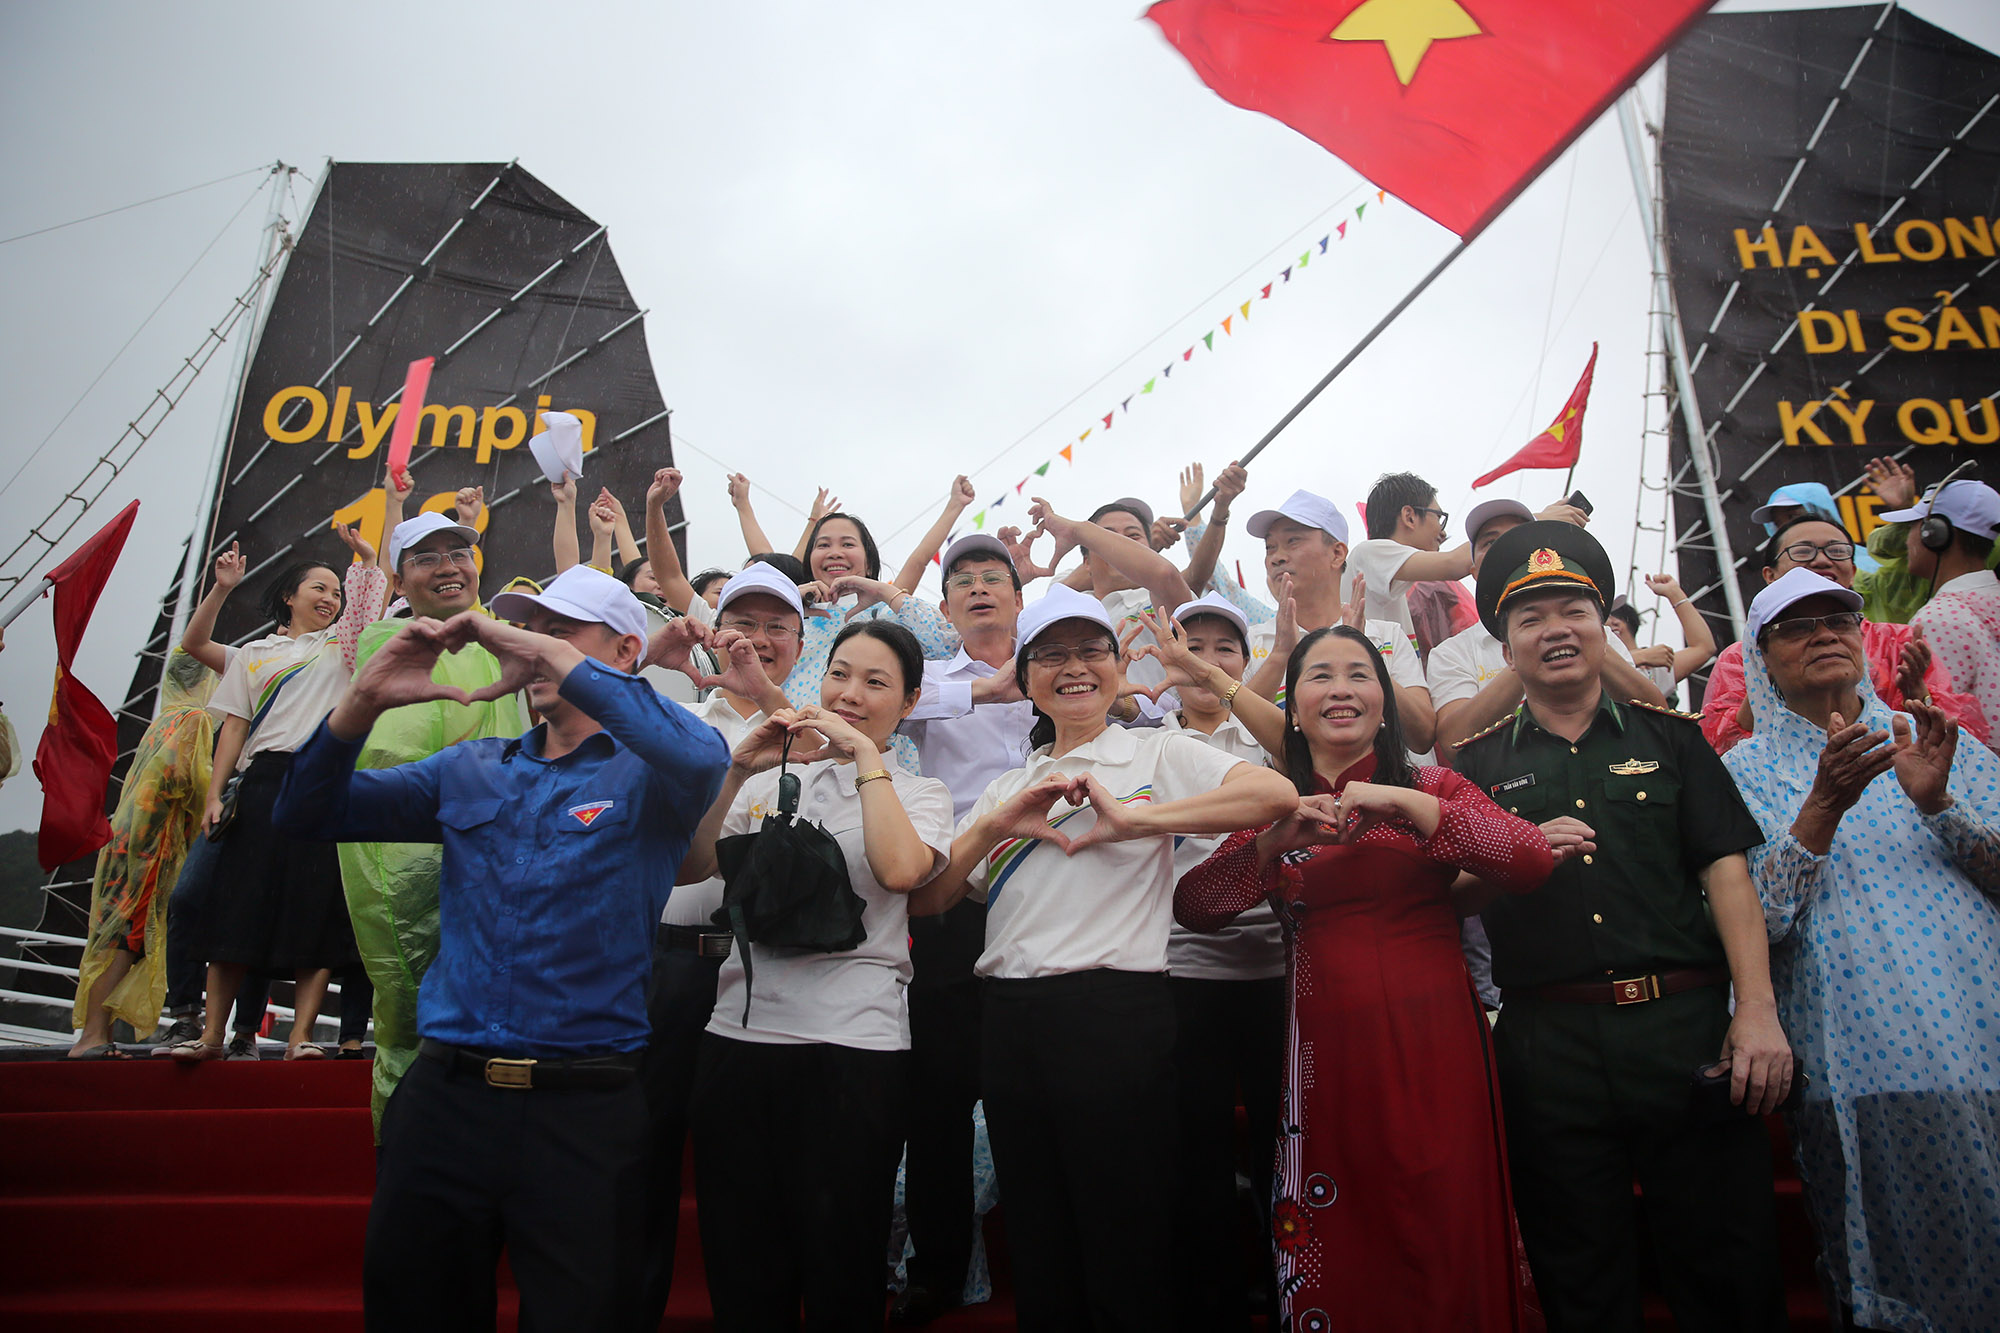 Chúc mừng Hoàng Cường, chúc mừng em vì đã mang lại niềm tự hào cho toàn thể ngừoi dân Quảng Ninh ngày hôm nay.